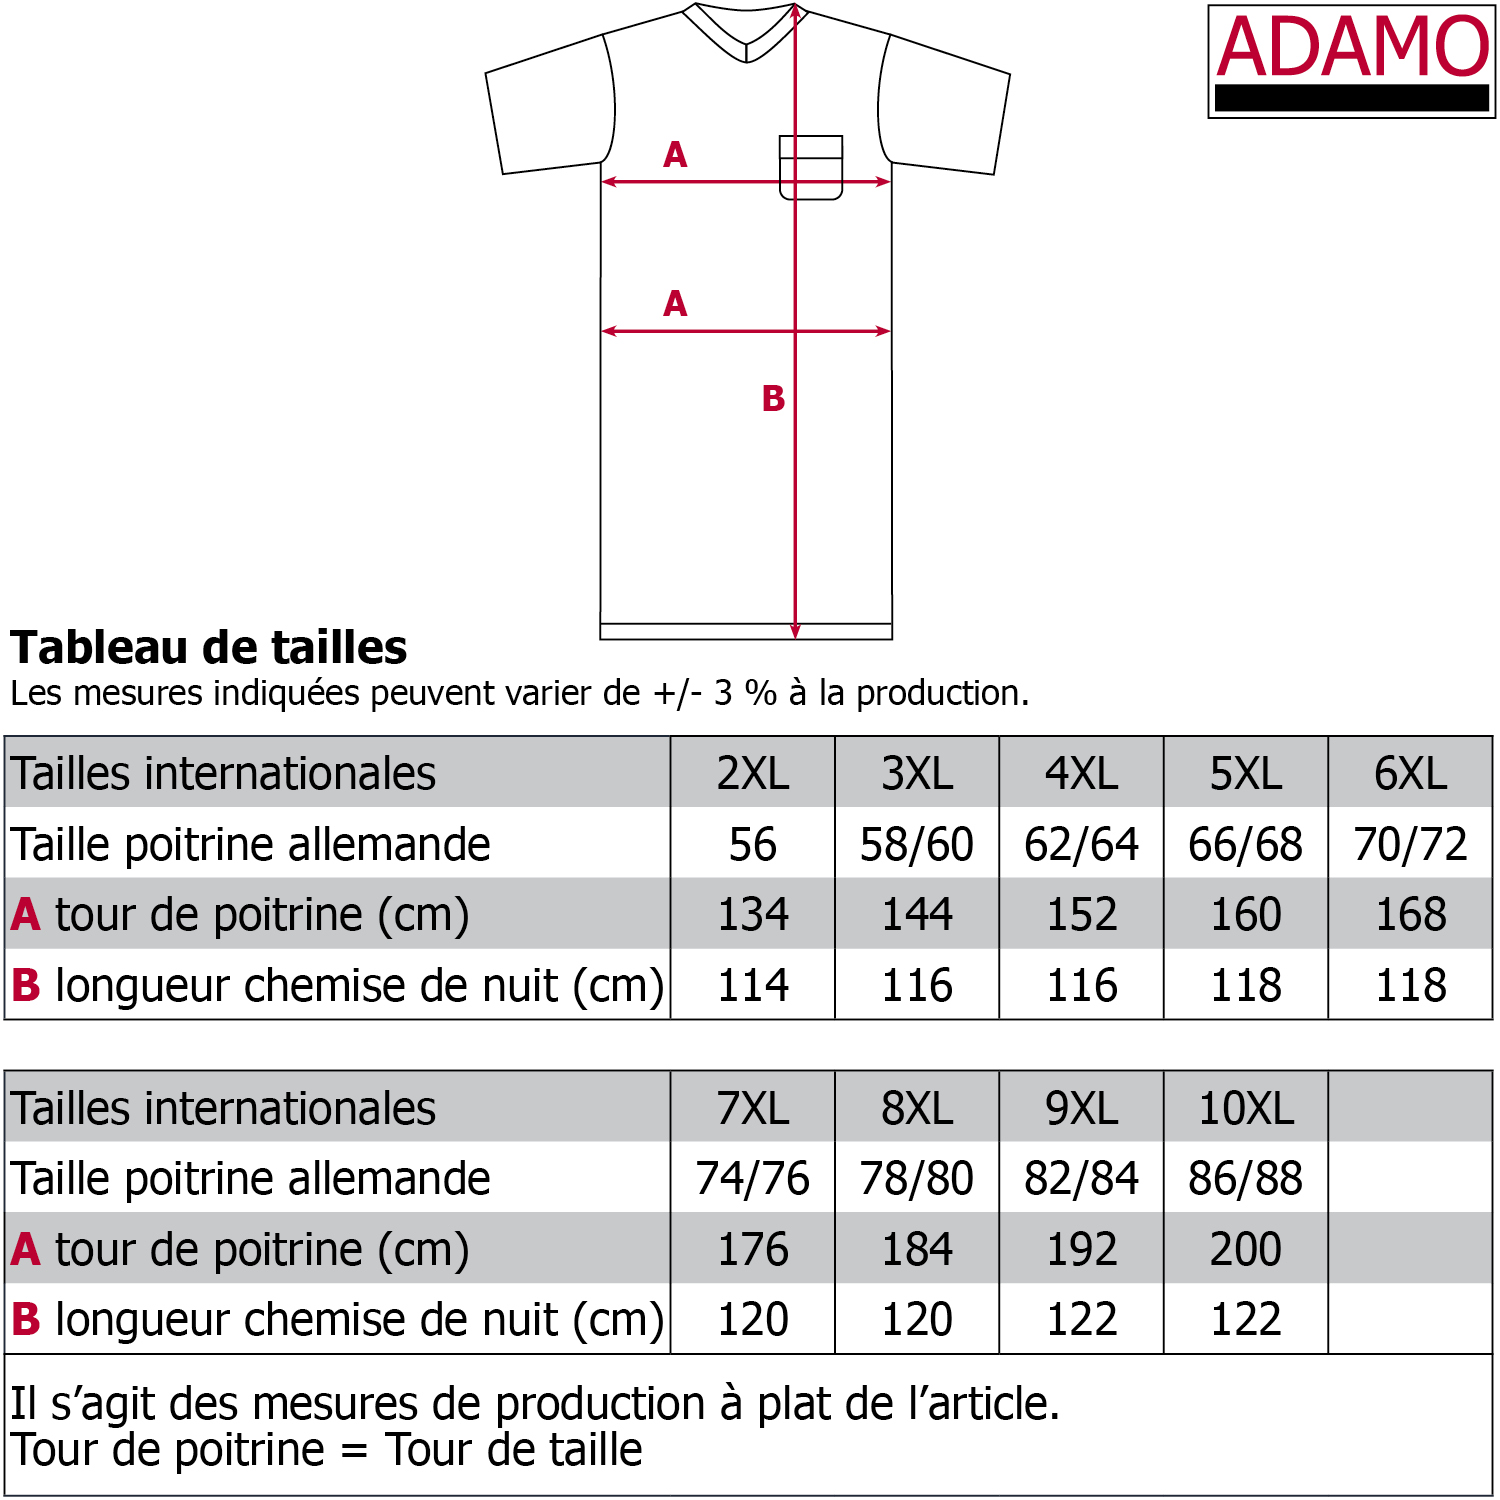 Nachthemd von Adamo Serie Bert in Übergrößen 2XL - 10XL für Herren kurzarm